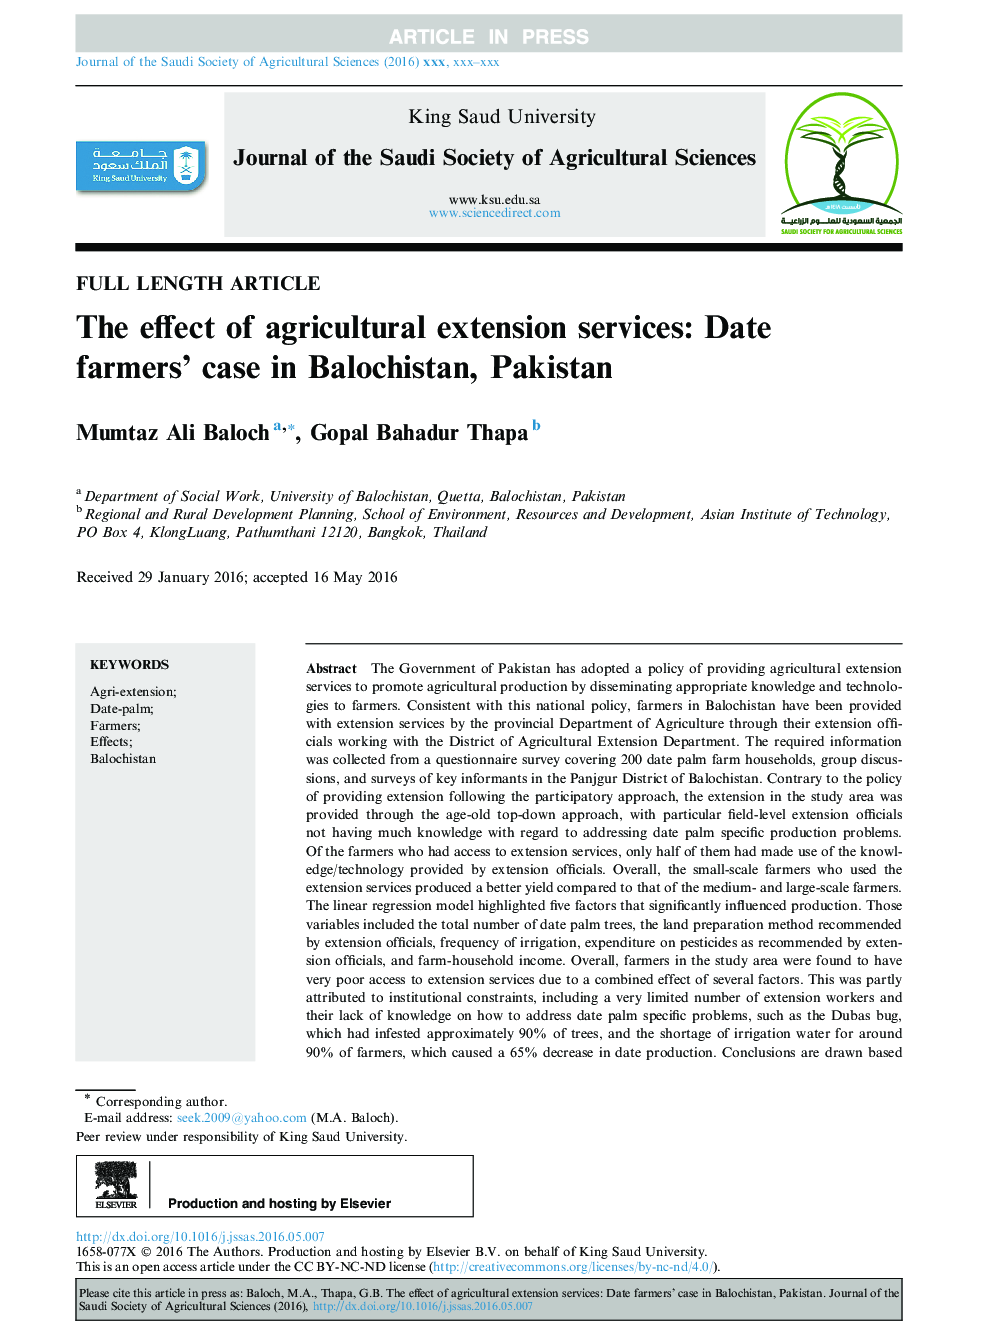 تأثیر خدمات توسعه کشاورزی: ​​تاریخ دادستان کشاورزان در بلوچستان، 